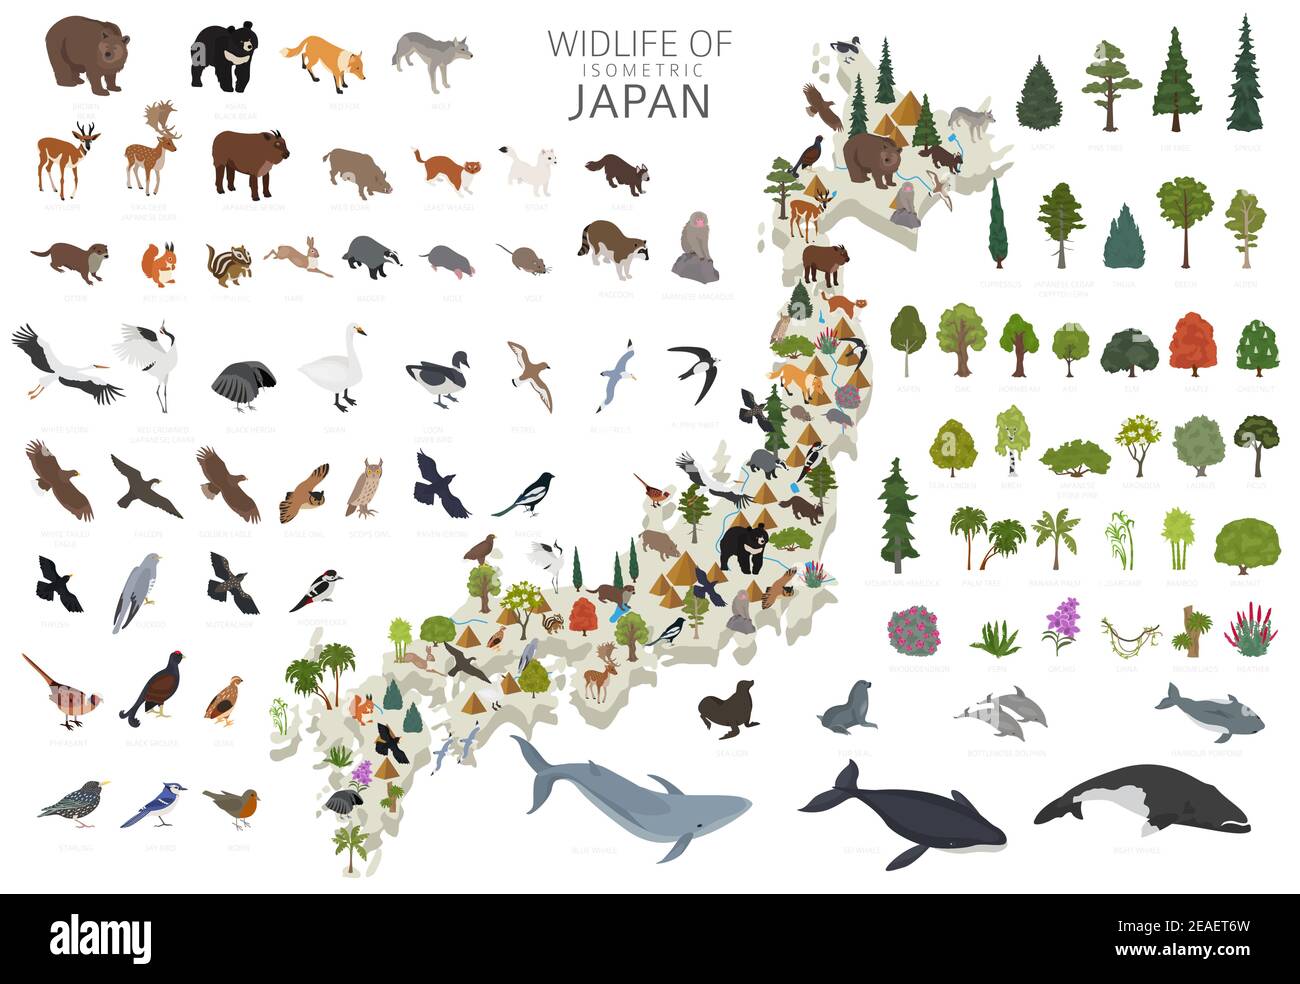 Conception 3D isométrique de la faune japonaise. Animaux, oiseaux et plantes éléments constructeurs isolés sur un ensemble blanc. Créez votre propre infocol graphique de géographie Illustration de Vecteur